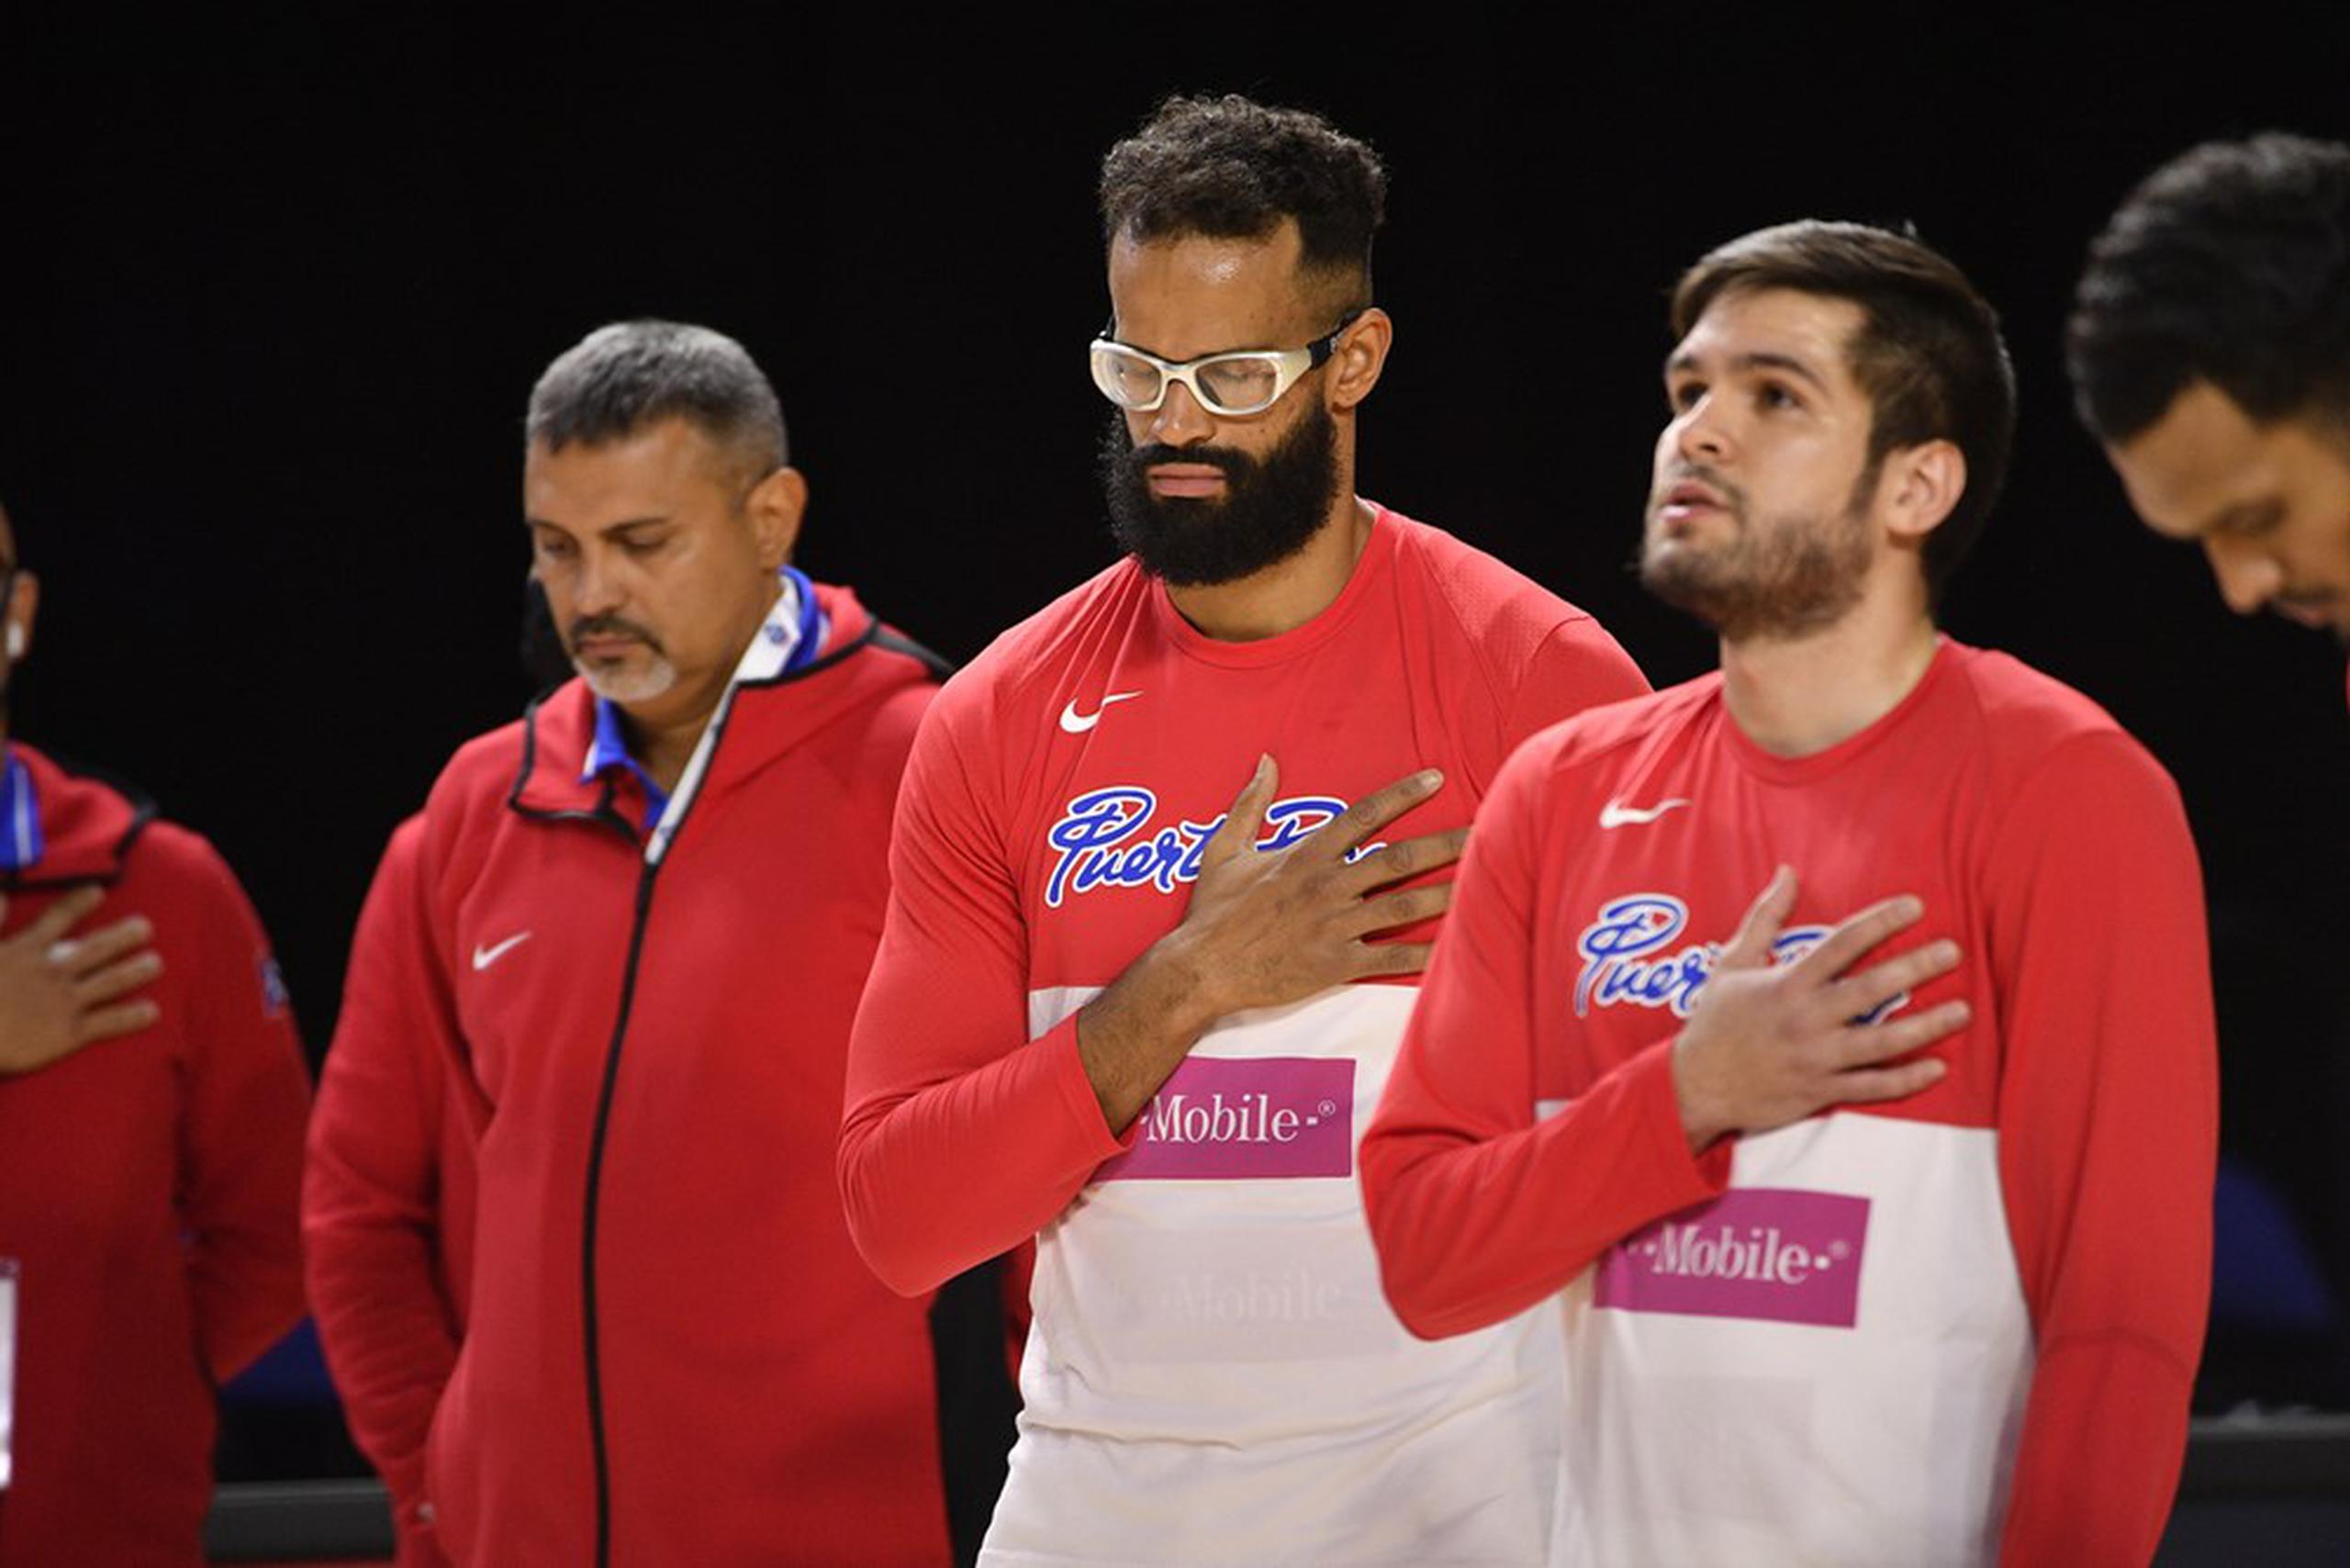 Puerto Rico ya no debutará en el Repechaje Olímpico este martes debido a la ausencia del torneo de Senegal. Ahora su primer juego será el jueves ante Italia. En la foto Eddie Casiano, Gilberto Clavell e Iván Gandía. (FIBA)